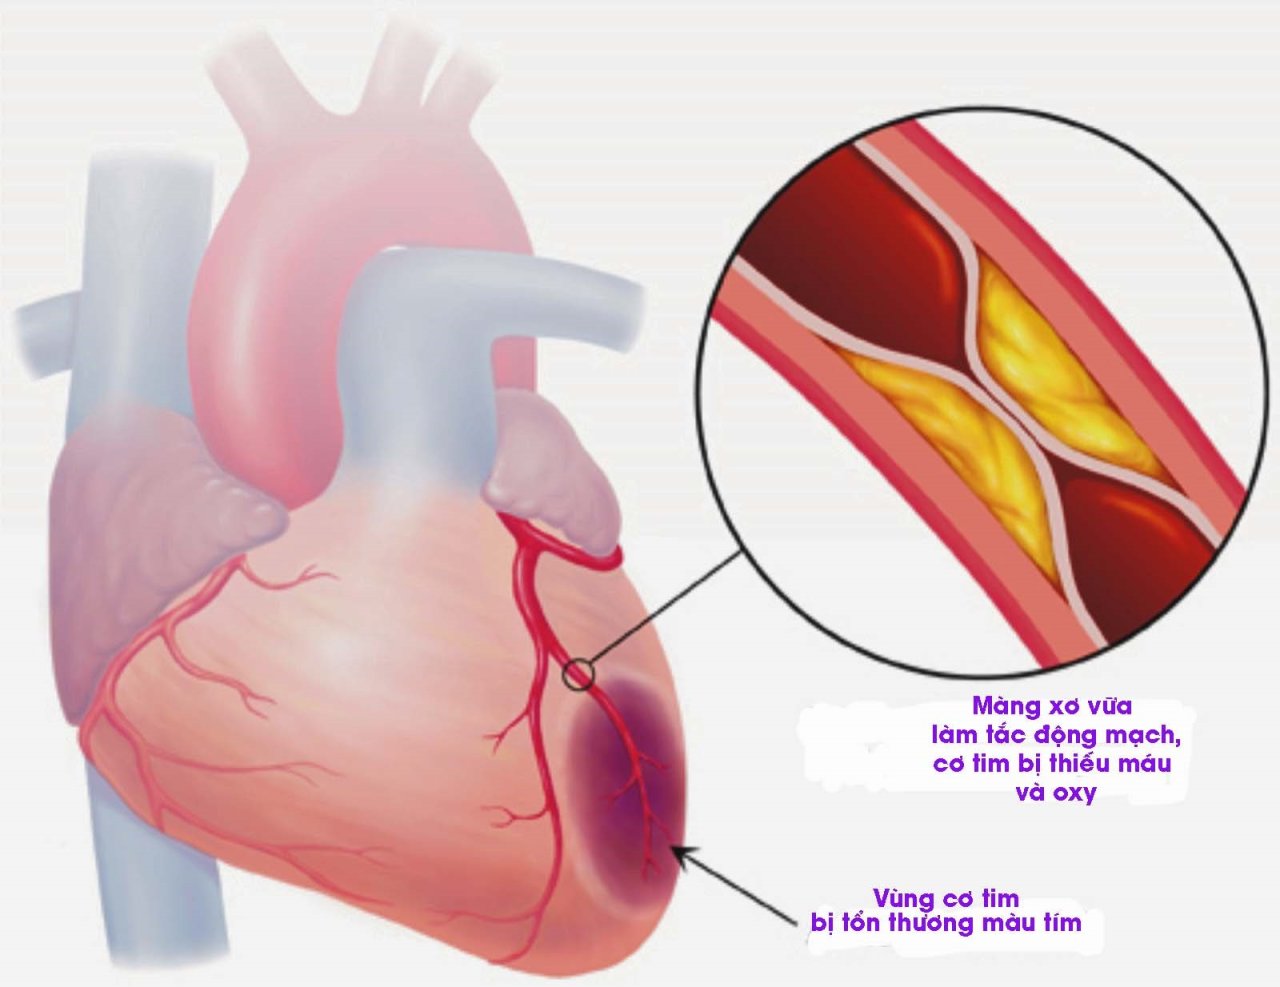 Nhồi máu cơ tim: Nguy hiểm và cách phòng ngừa hiệu quả